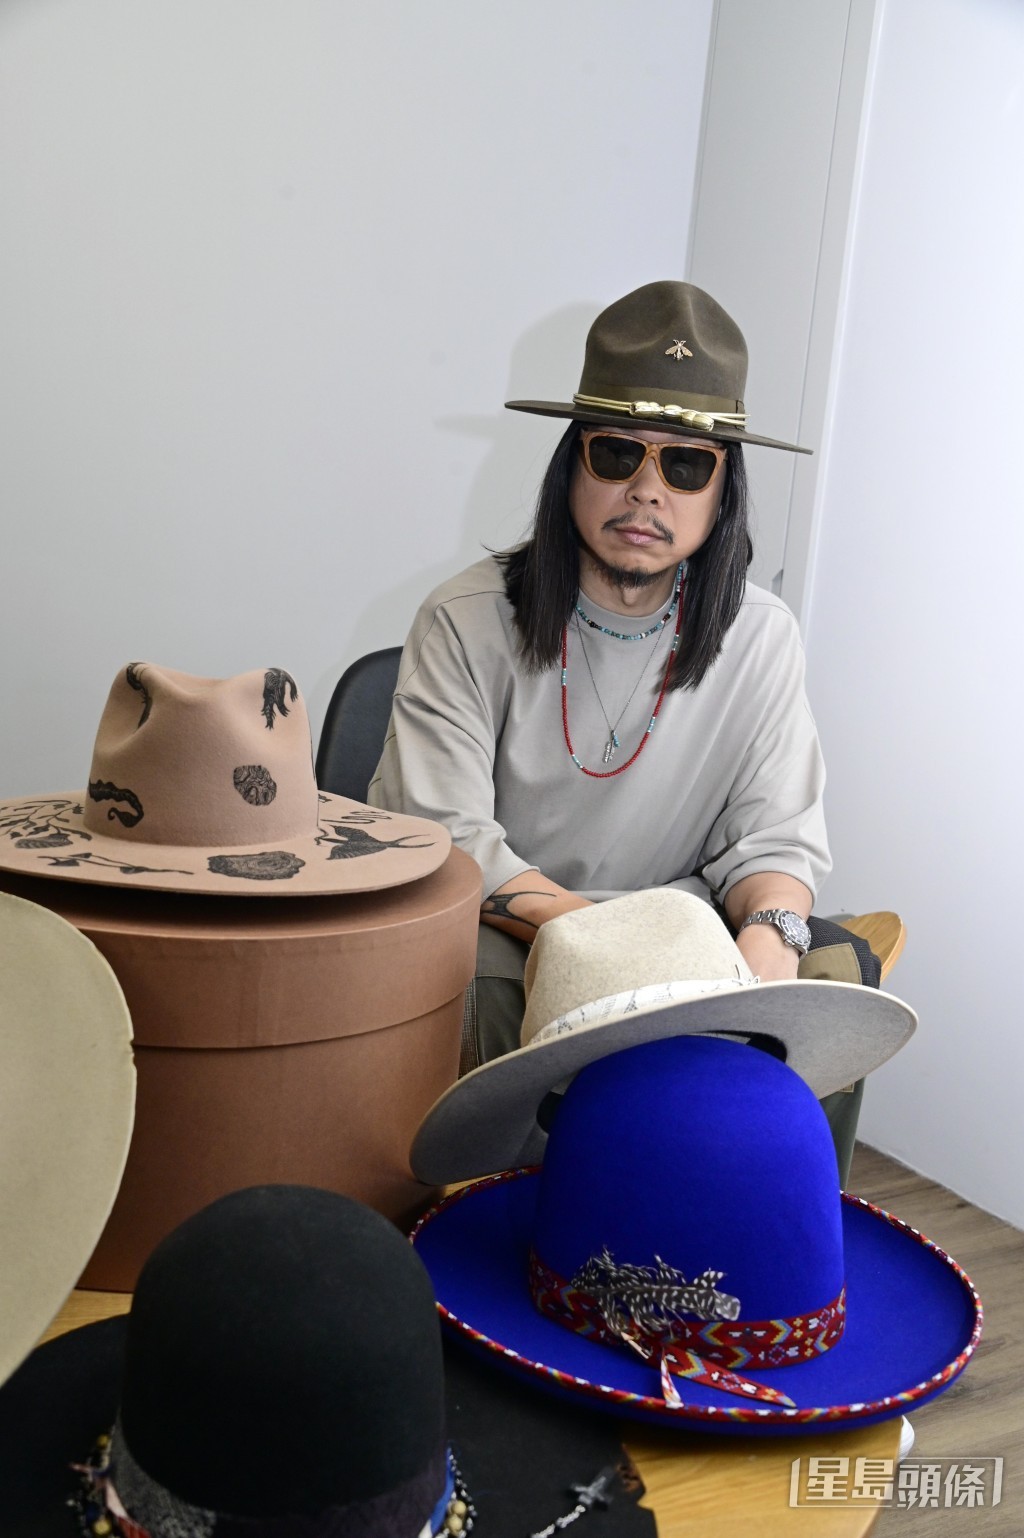 人稱「Carl叔叔」的著名音樂人王雙駿，近年以「招牌」戴帽造型示人。